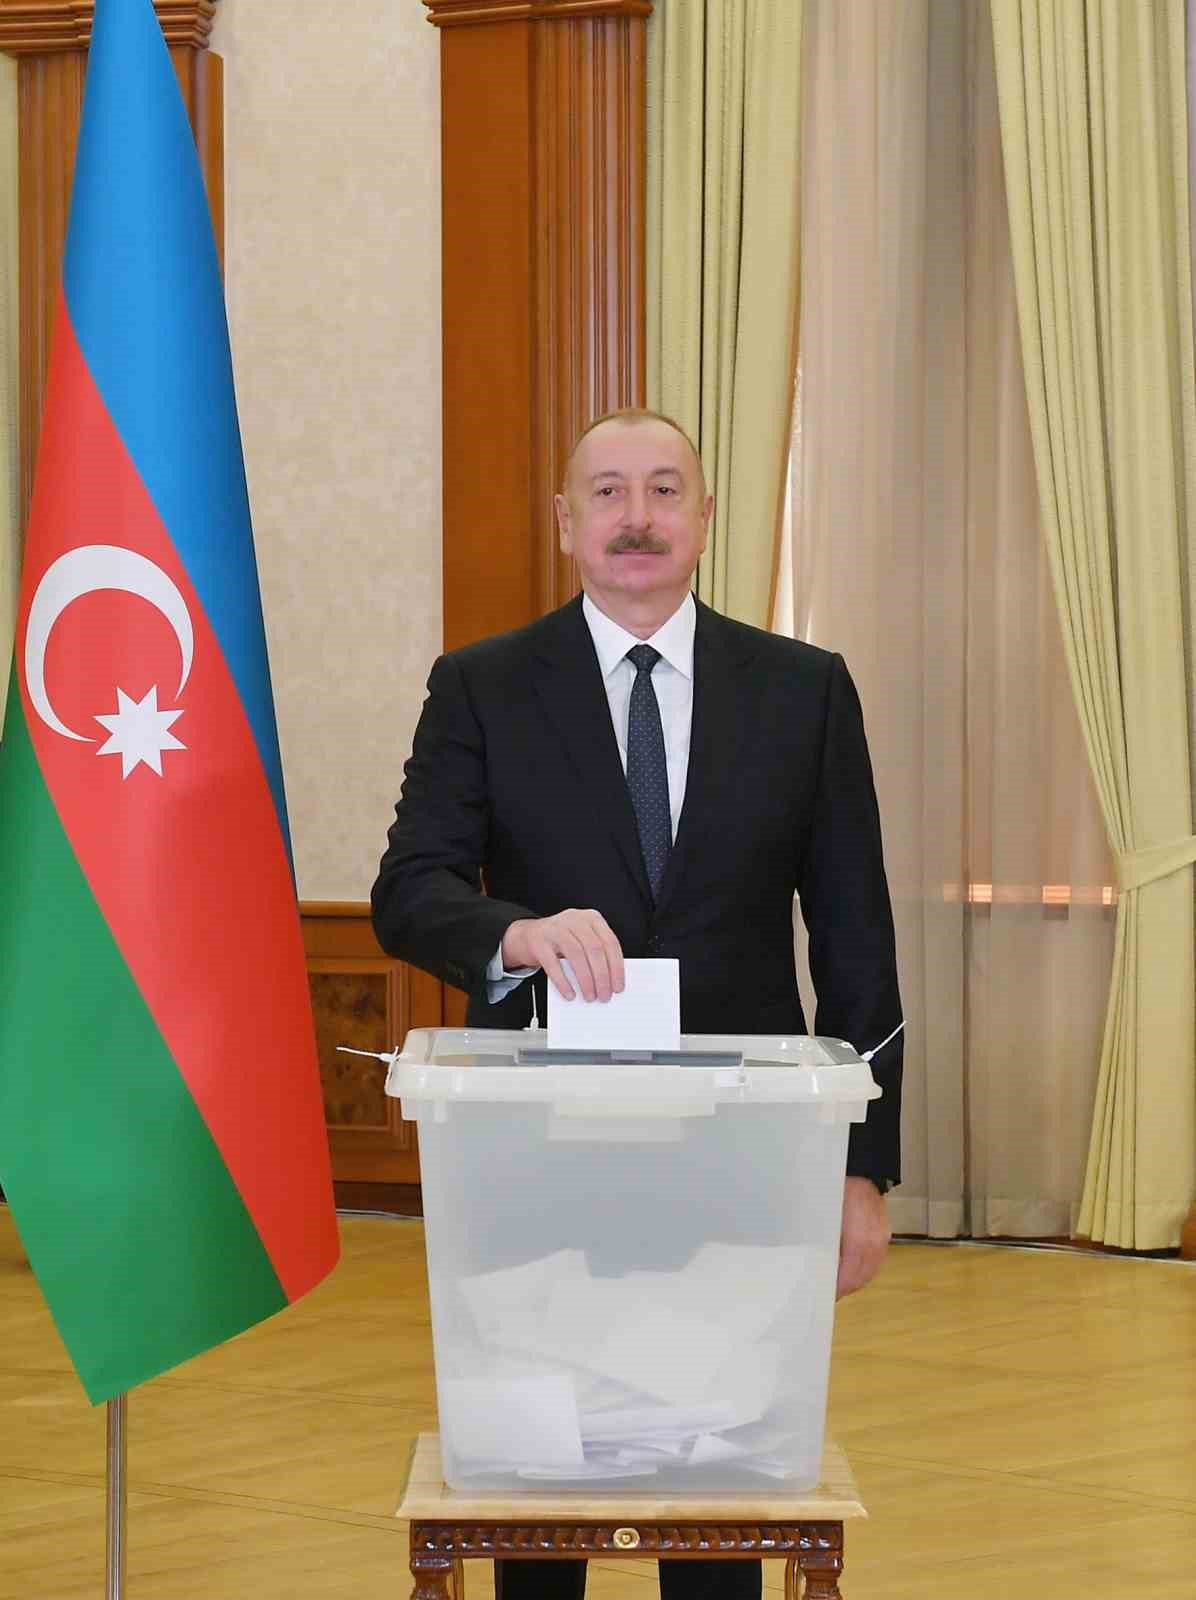 azerbaycan cumhurbaskani aliyev oyunu isgalden kurtarilan hankendide kullandi 0 bBRUuwAZ